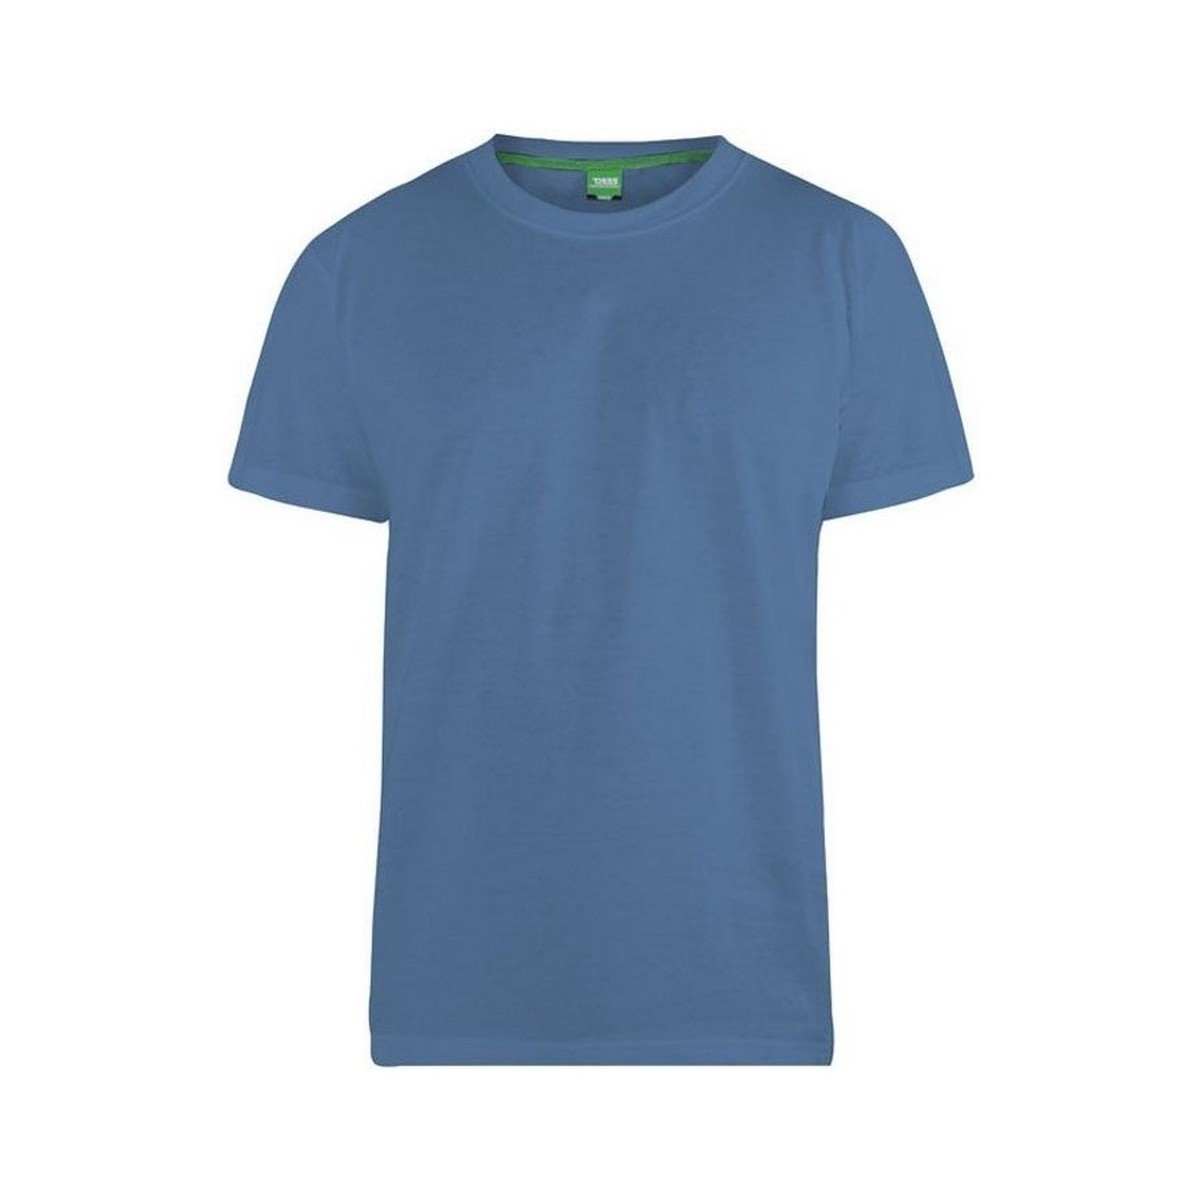 Vêtements Homme T-shirts manches longues Duke  Bleu